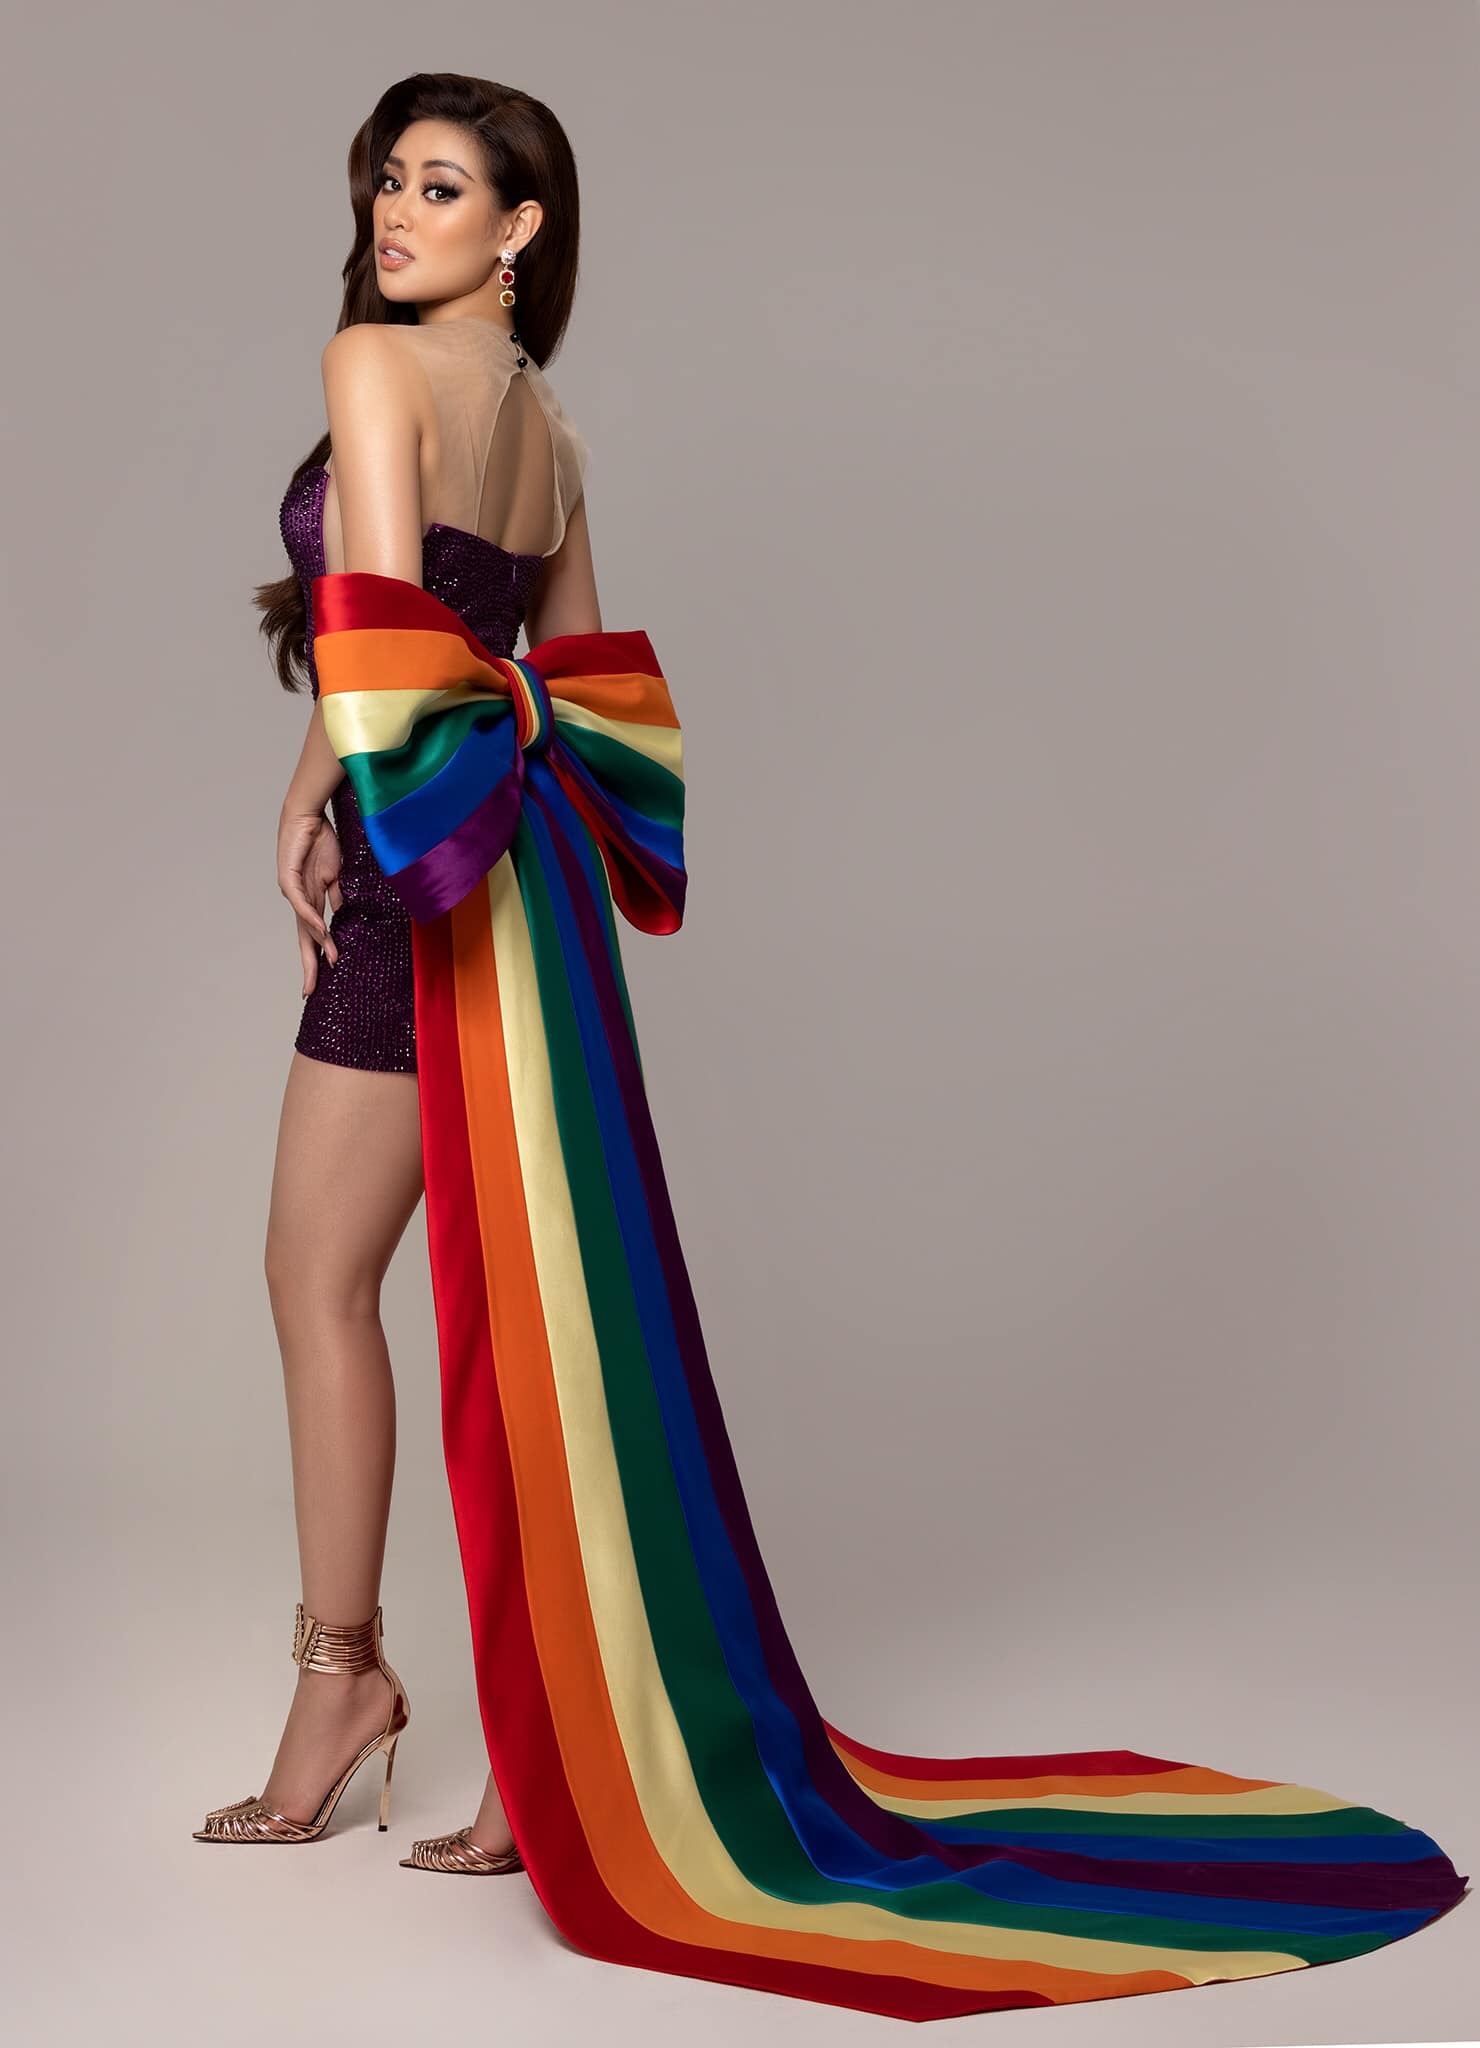 Váy áo LGBT: Váy áo LGBT không chỉ là một loại trang phục, mà còn là biểu tượng của sự đa dạng và tự do giới tính. Những bộ cánh này đã trở thành đại diện cho tình yêu thương và sự chấp nhận cho cộng đồng LGBT. Chúng ta hãy cùng nhau hân hoan xây dựng một thế giới tuyệt vời hơn, bằng cách chọn lựa trang phục đẹp và tôn vinh giá trị con người.